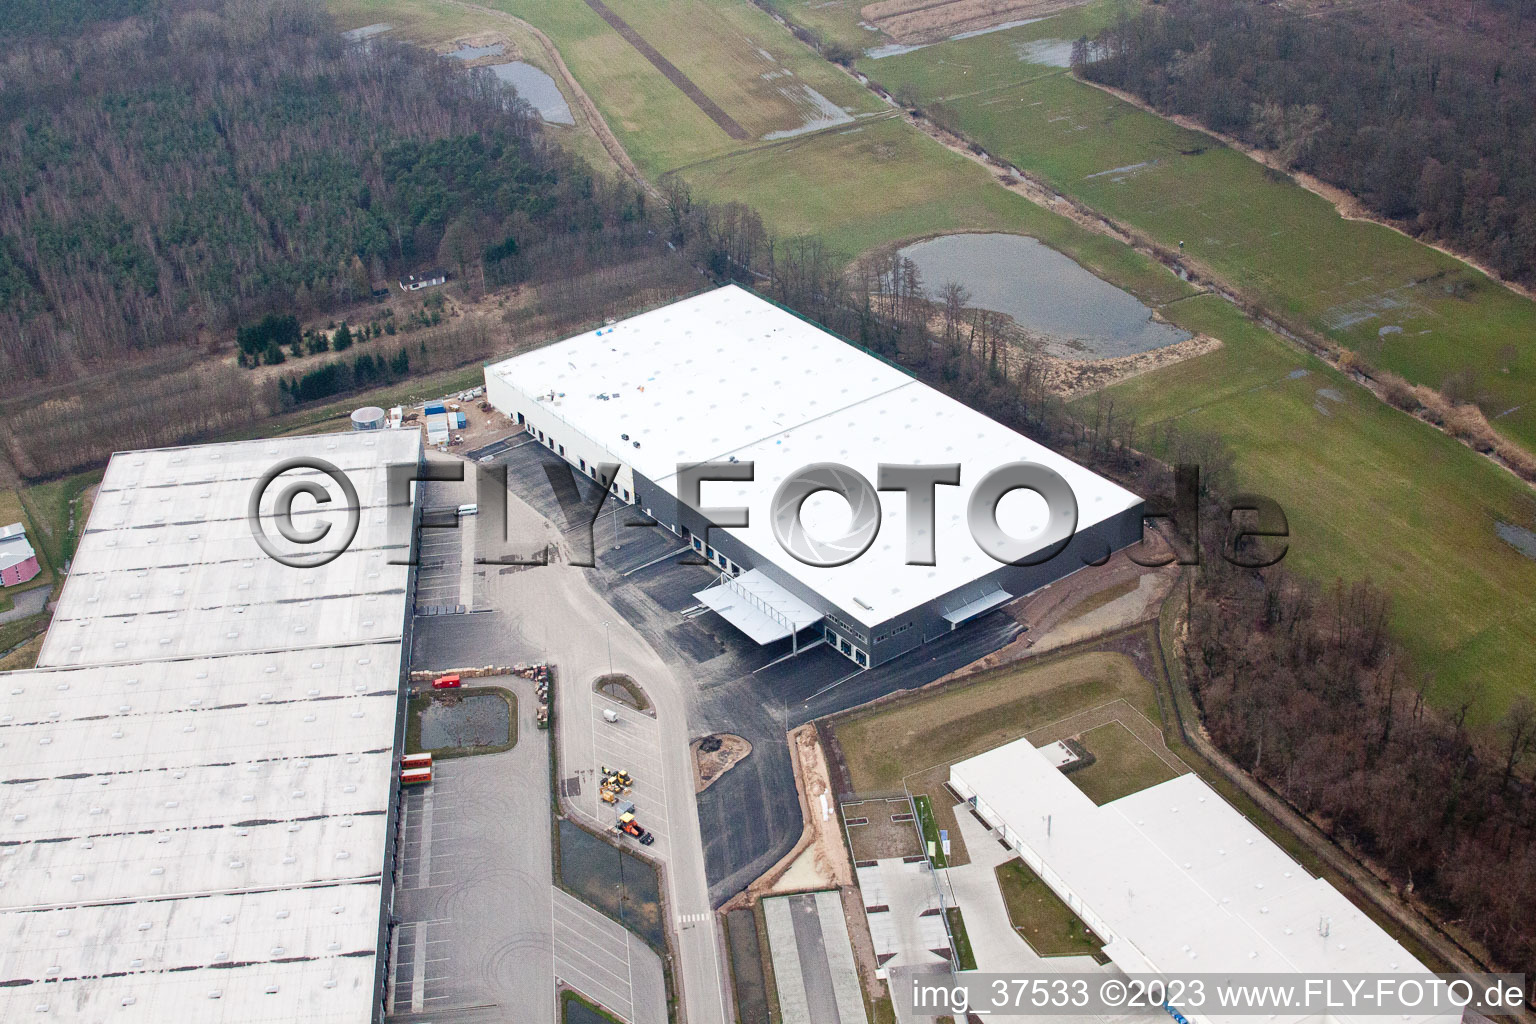 Zone commerciale Horst, 3ème phase de construction Gazely à le quartier Minderslachen in Kandel dans le département Rhénanie-Palatinat, Allemagne du point de vue du drone